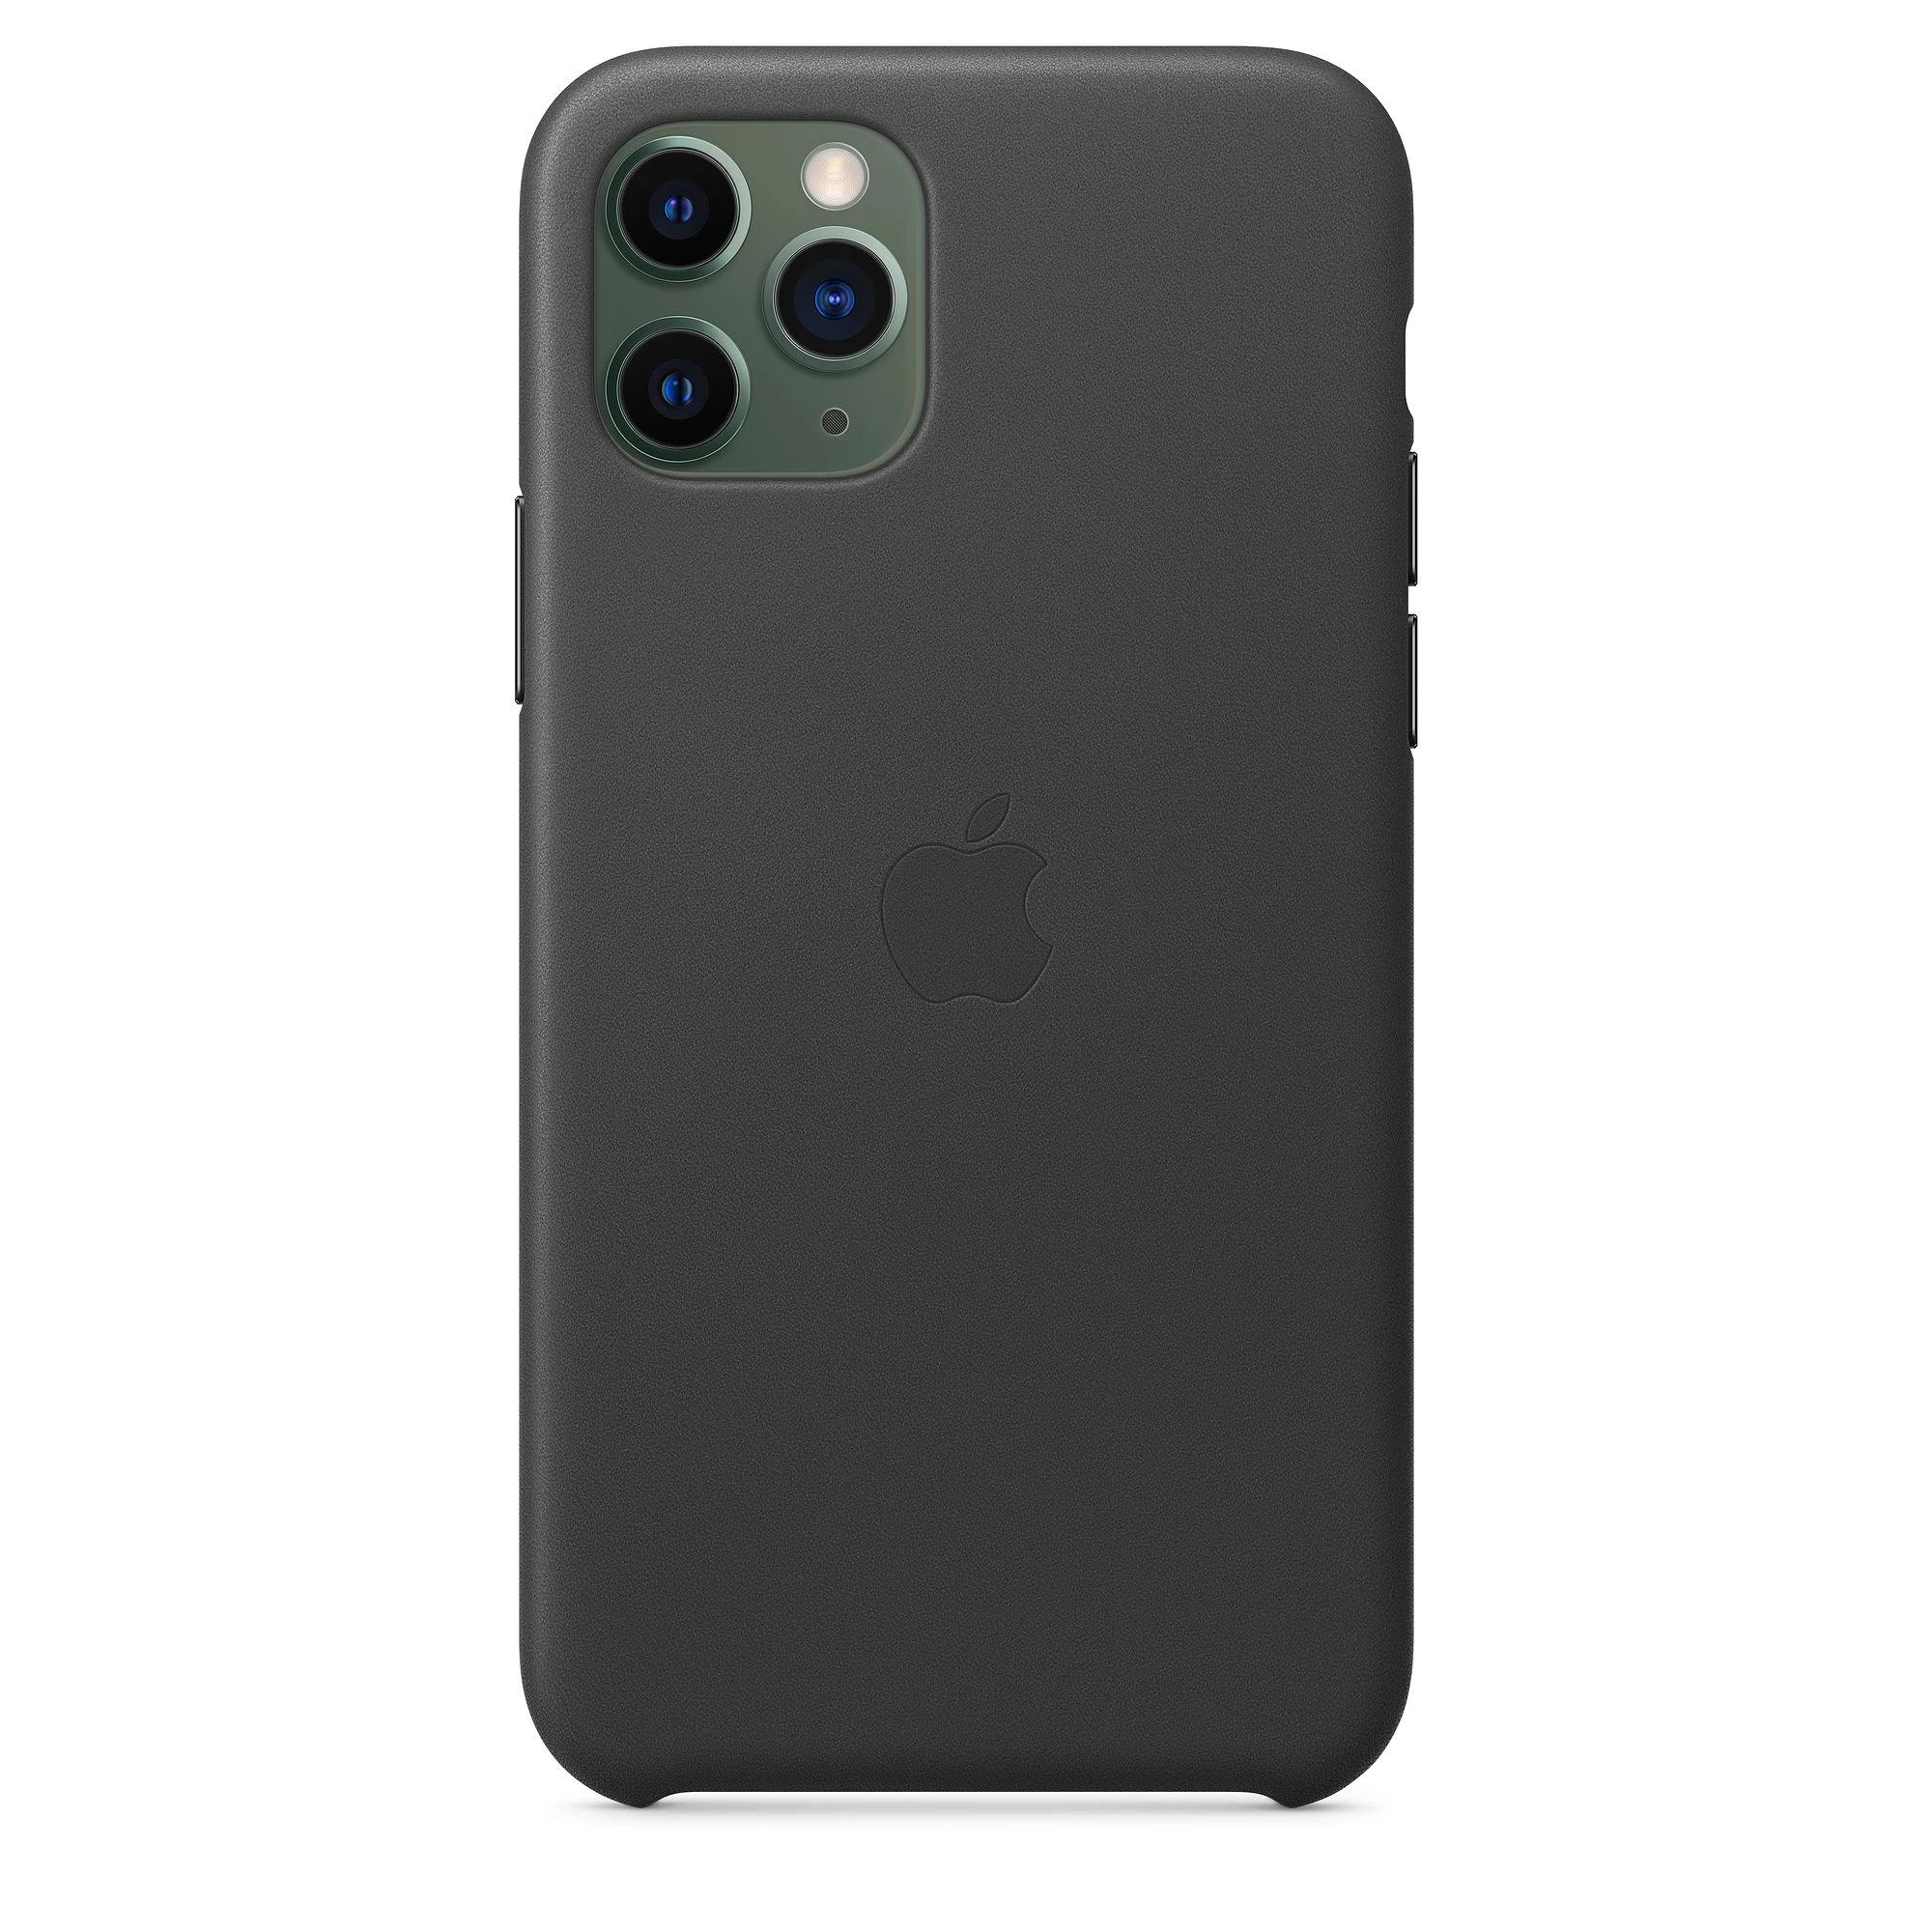 Чехол Apple iPhone 11 Pro Max Leather Case - Black (MX0E2)